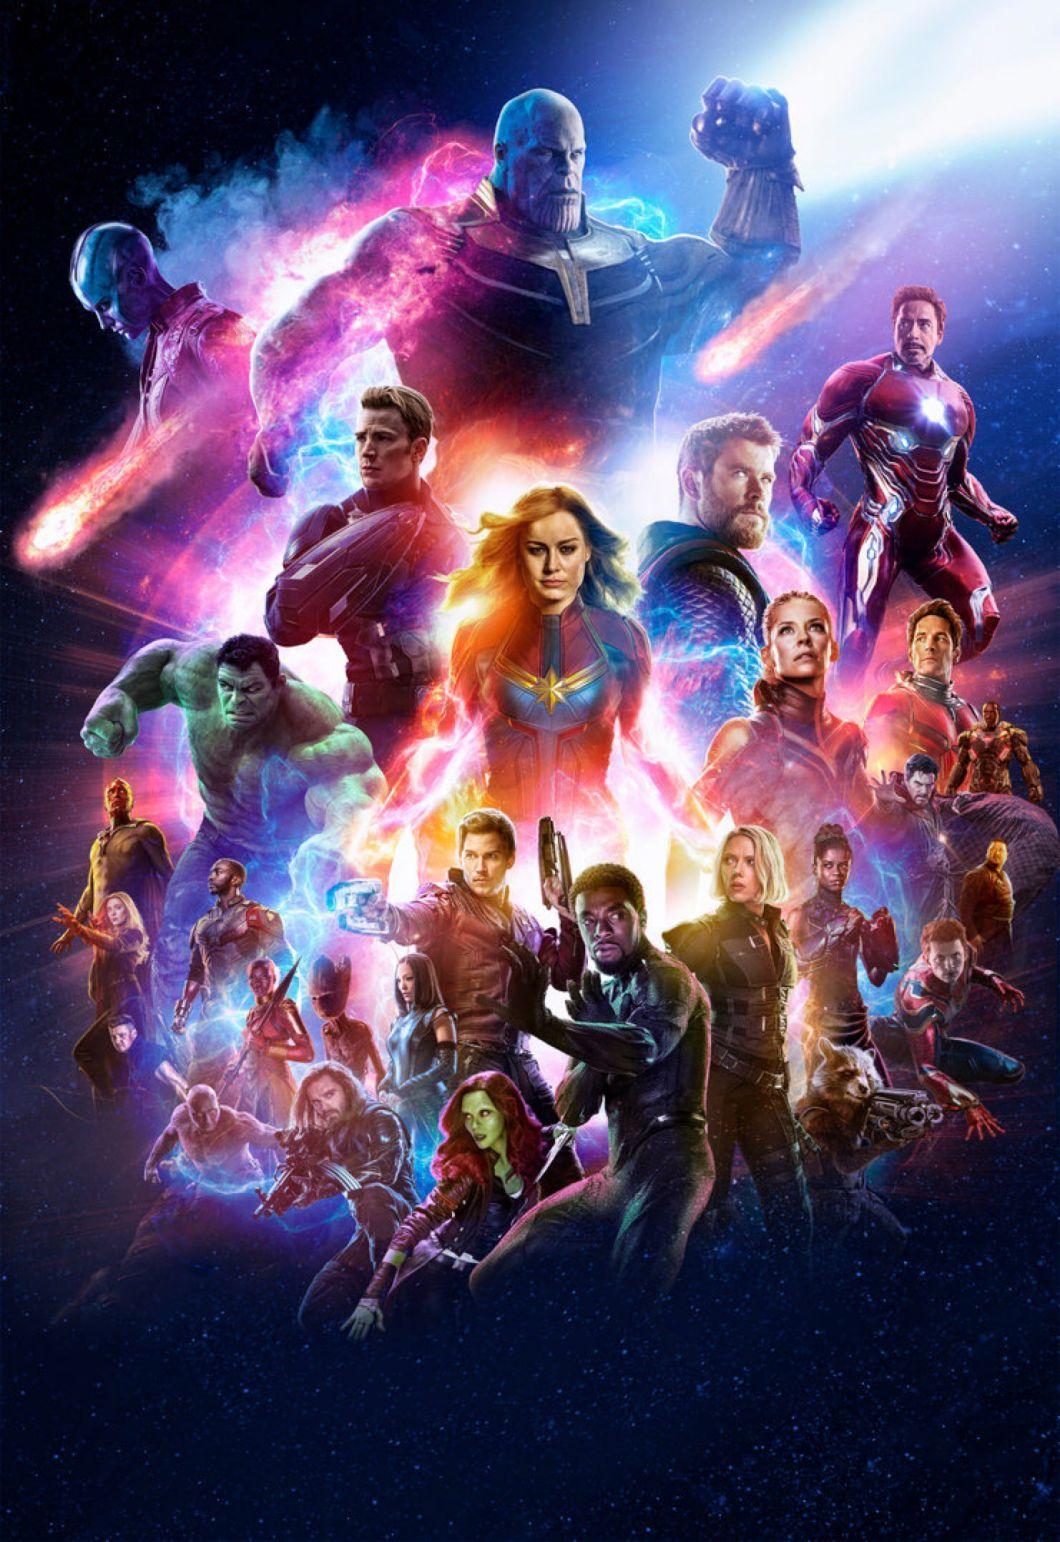 4k Marvel Studios Avengers Endgame Wallpaper iPhone, Android